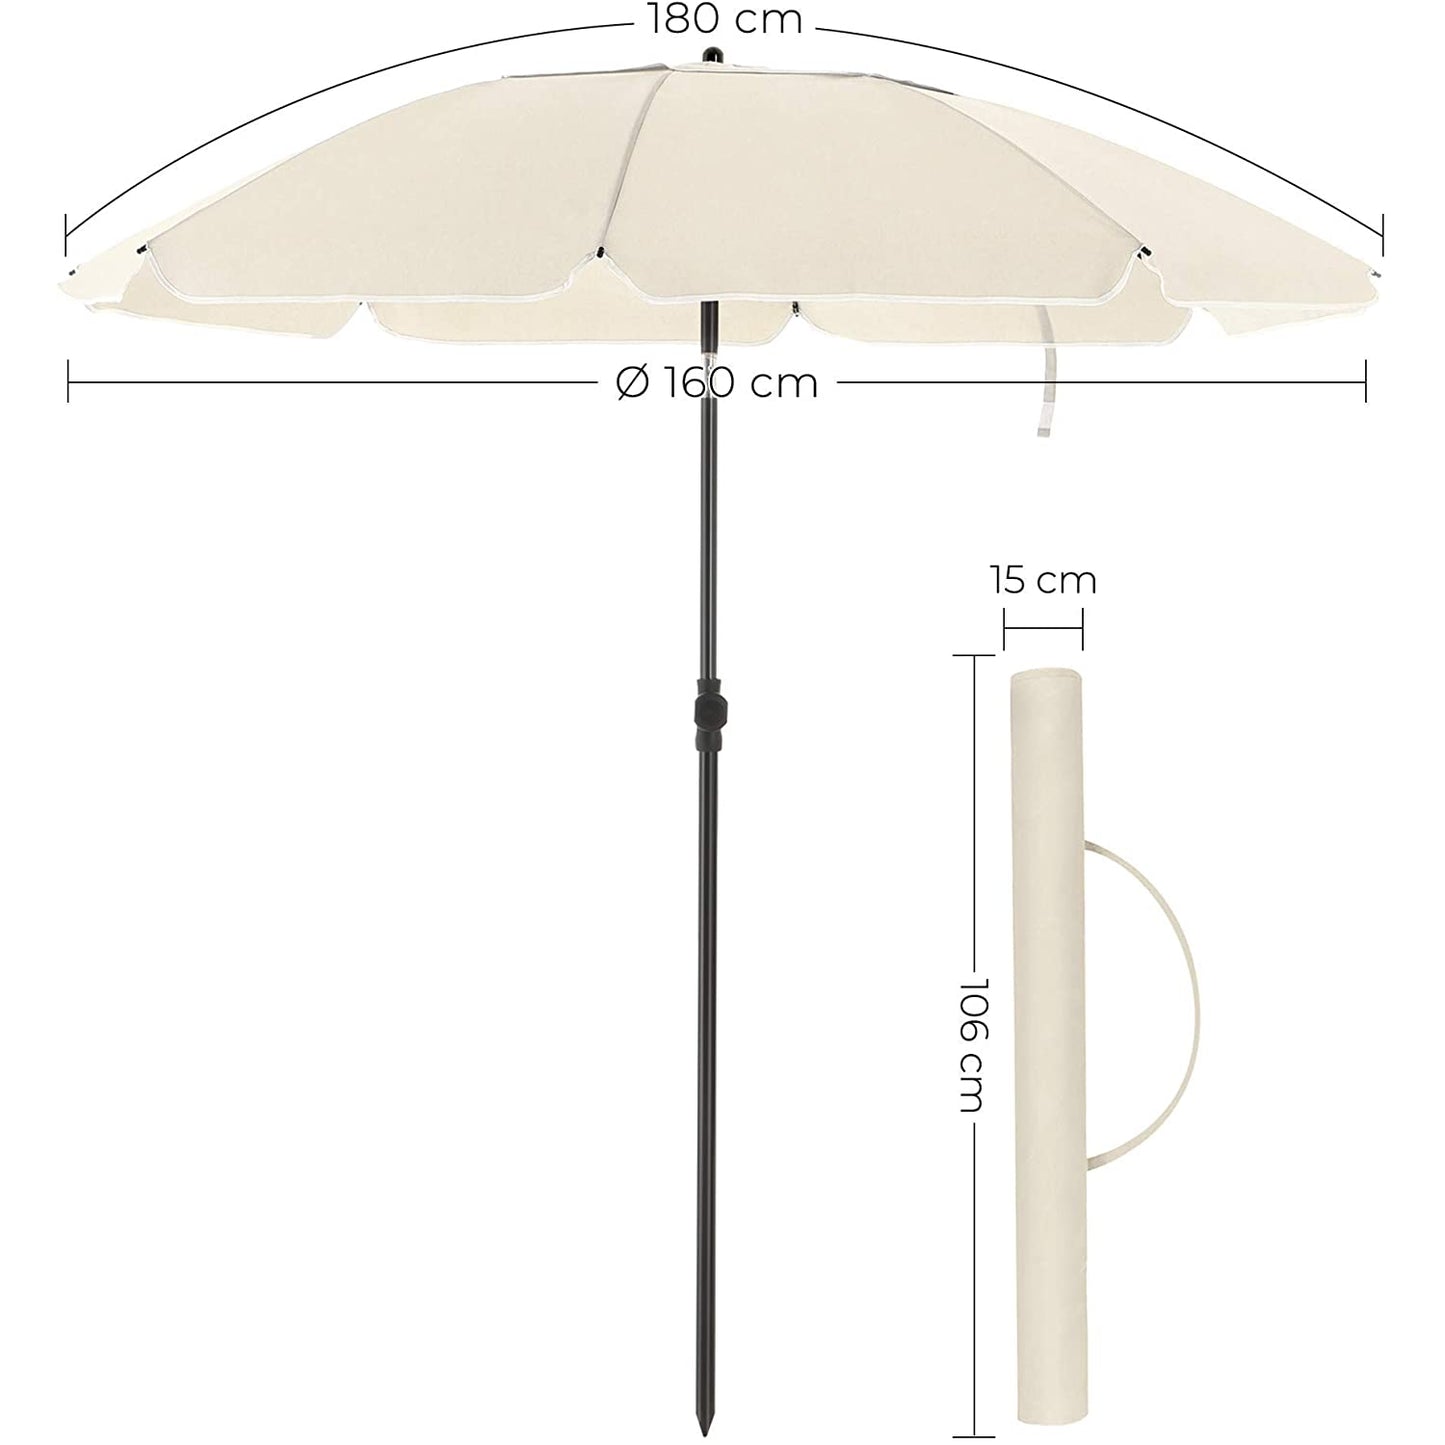 Nancy's Frog Lake Parasol - Parasol de plage - Mécanisme d'inclinaison - Octogonal - Polyester - Sac de transport - Beige - Ø 160 cm